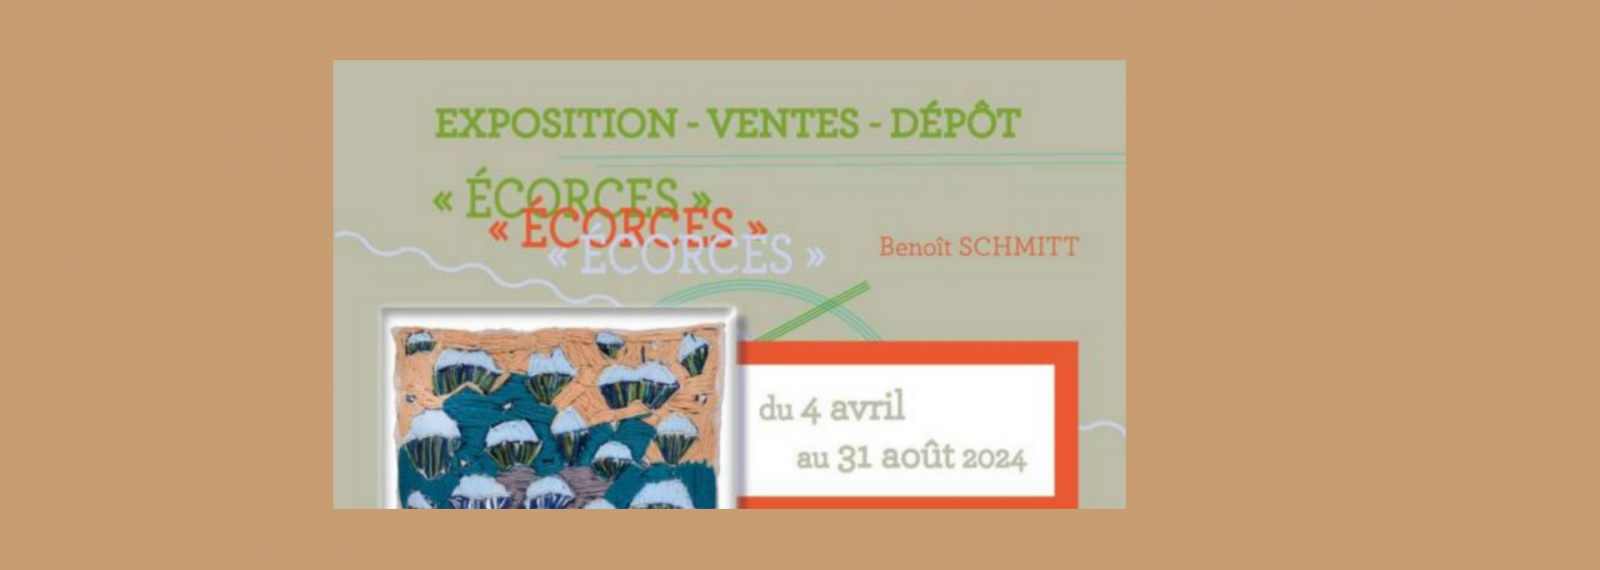 Ausstellung Verkäufe Depot - Écorces von Benoît Schmitt